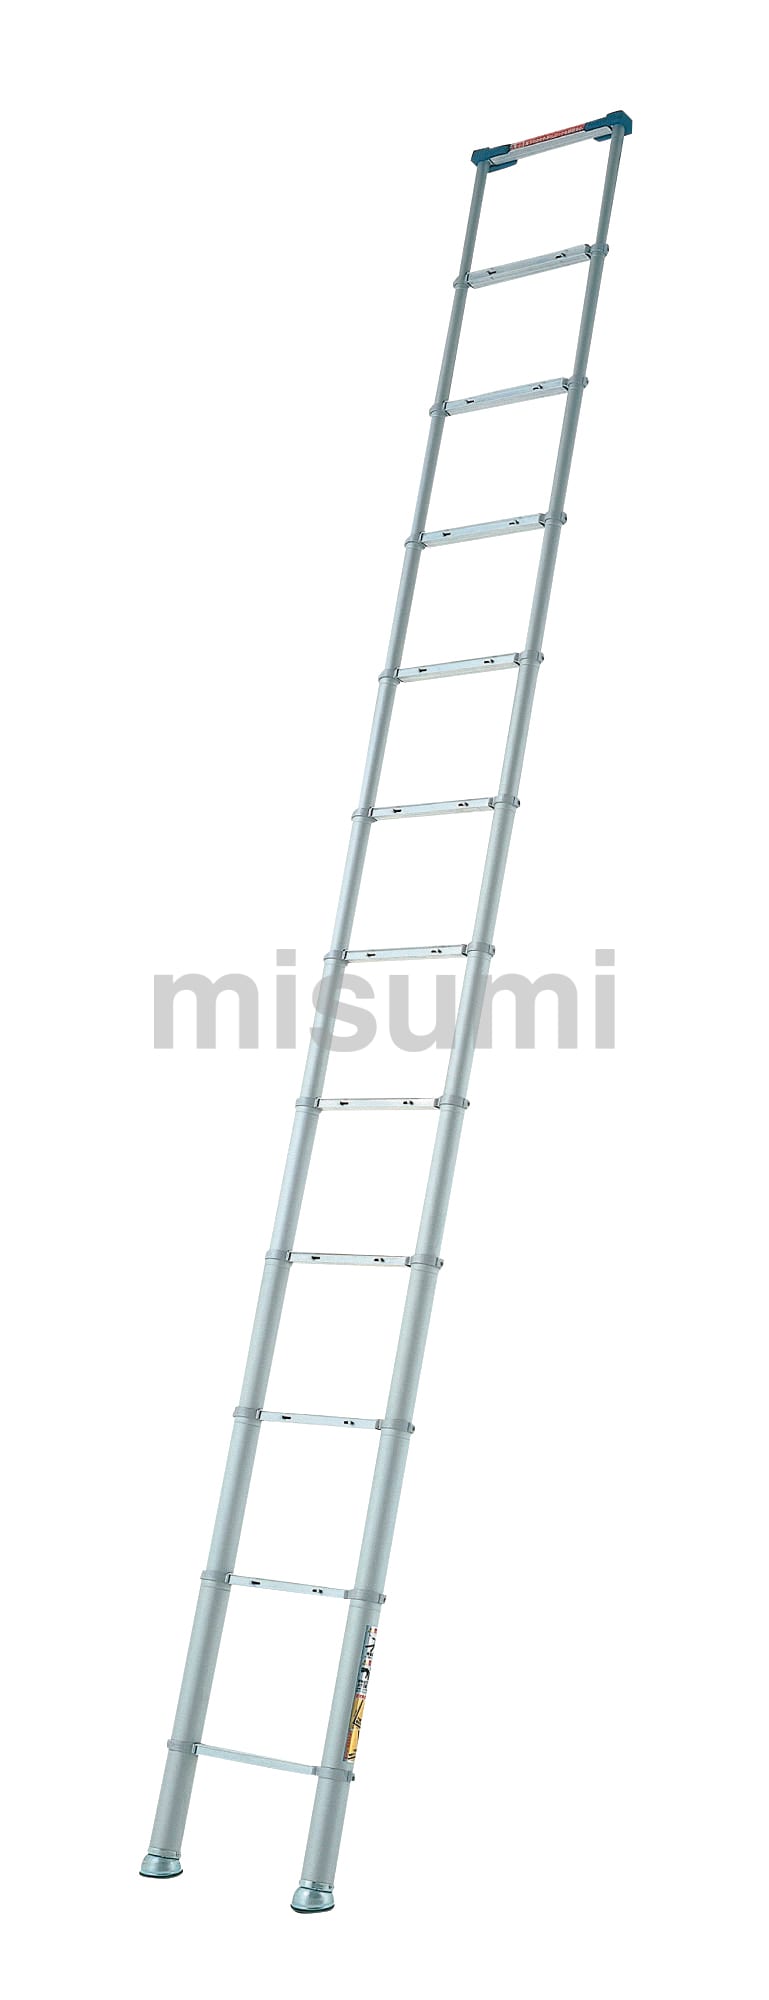 伸縮はしご スーパーラダーSL型 ピカコーポレイション MISUMI(ミスミ)